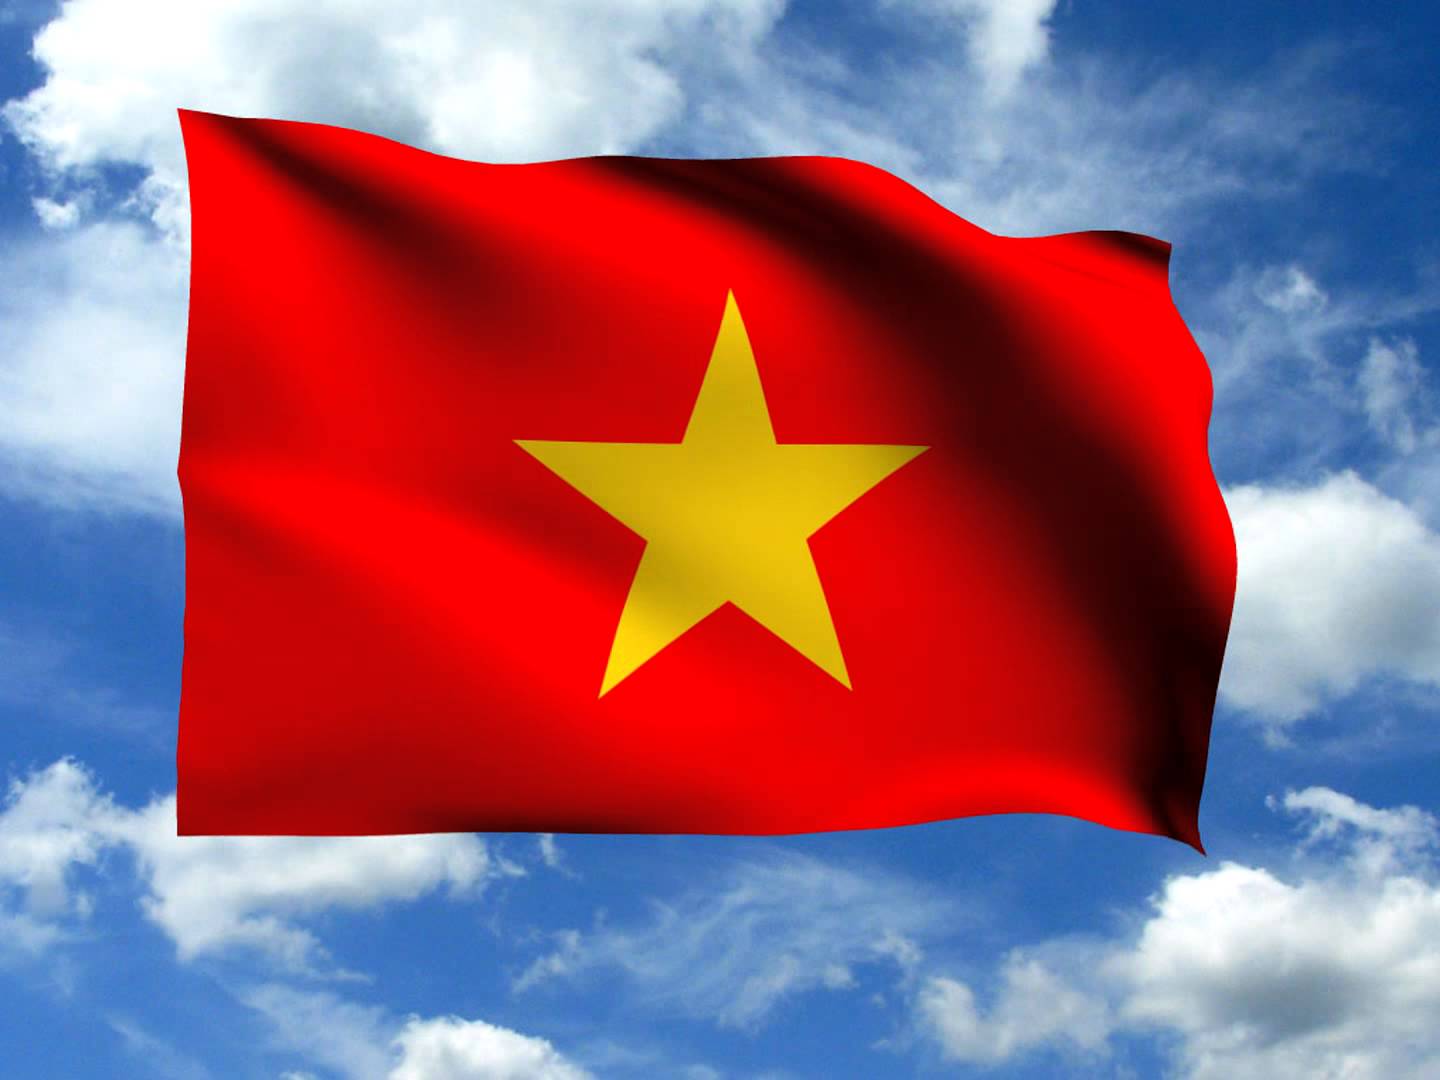 Hình lá cờ Việt Nam ảnh quốc kỳ đẹp, rõ, sắc nét-5